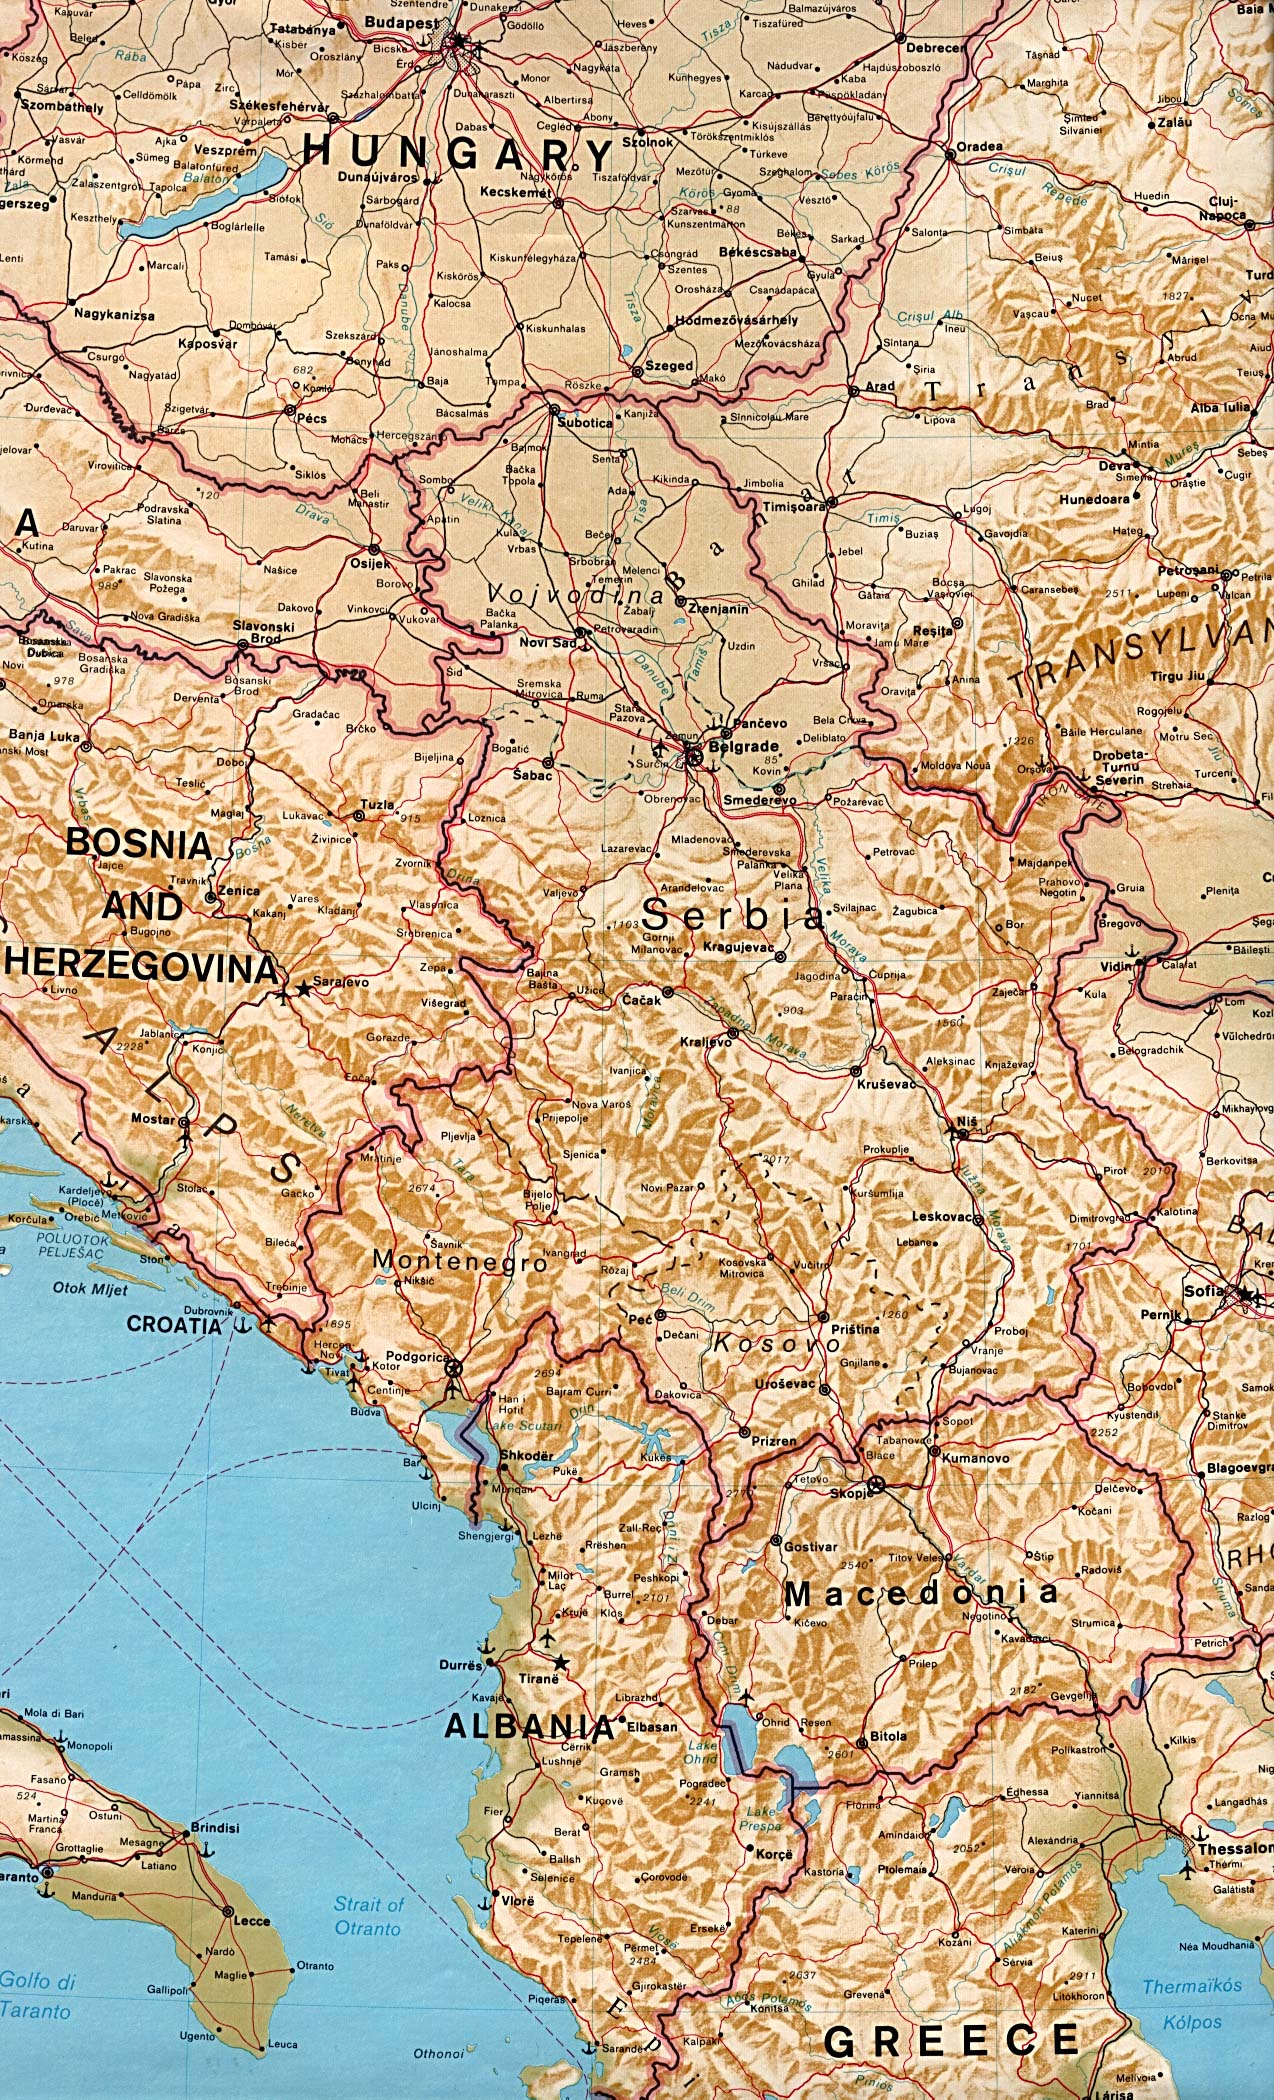 Mapa de Relieve Sombreado de los Balcanes Orientales